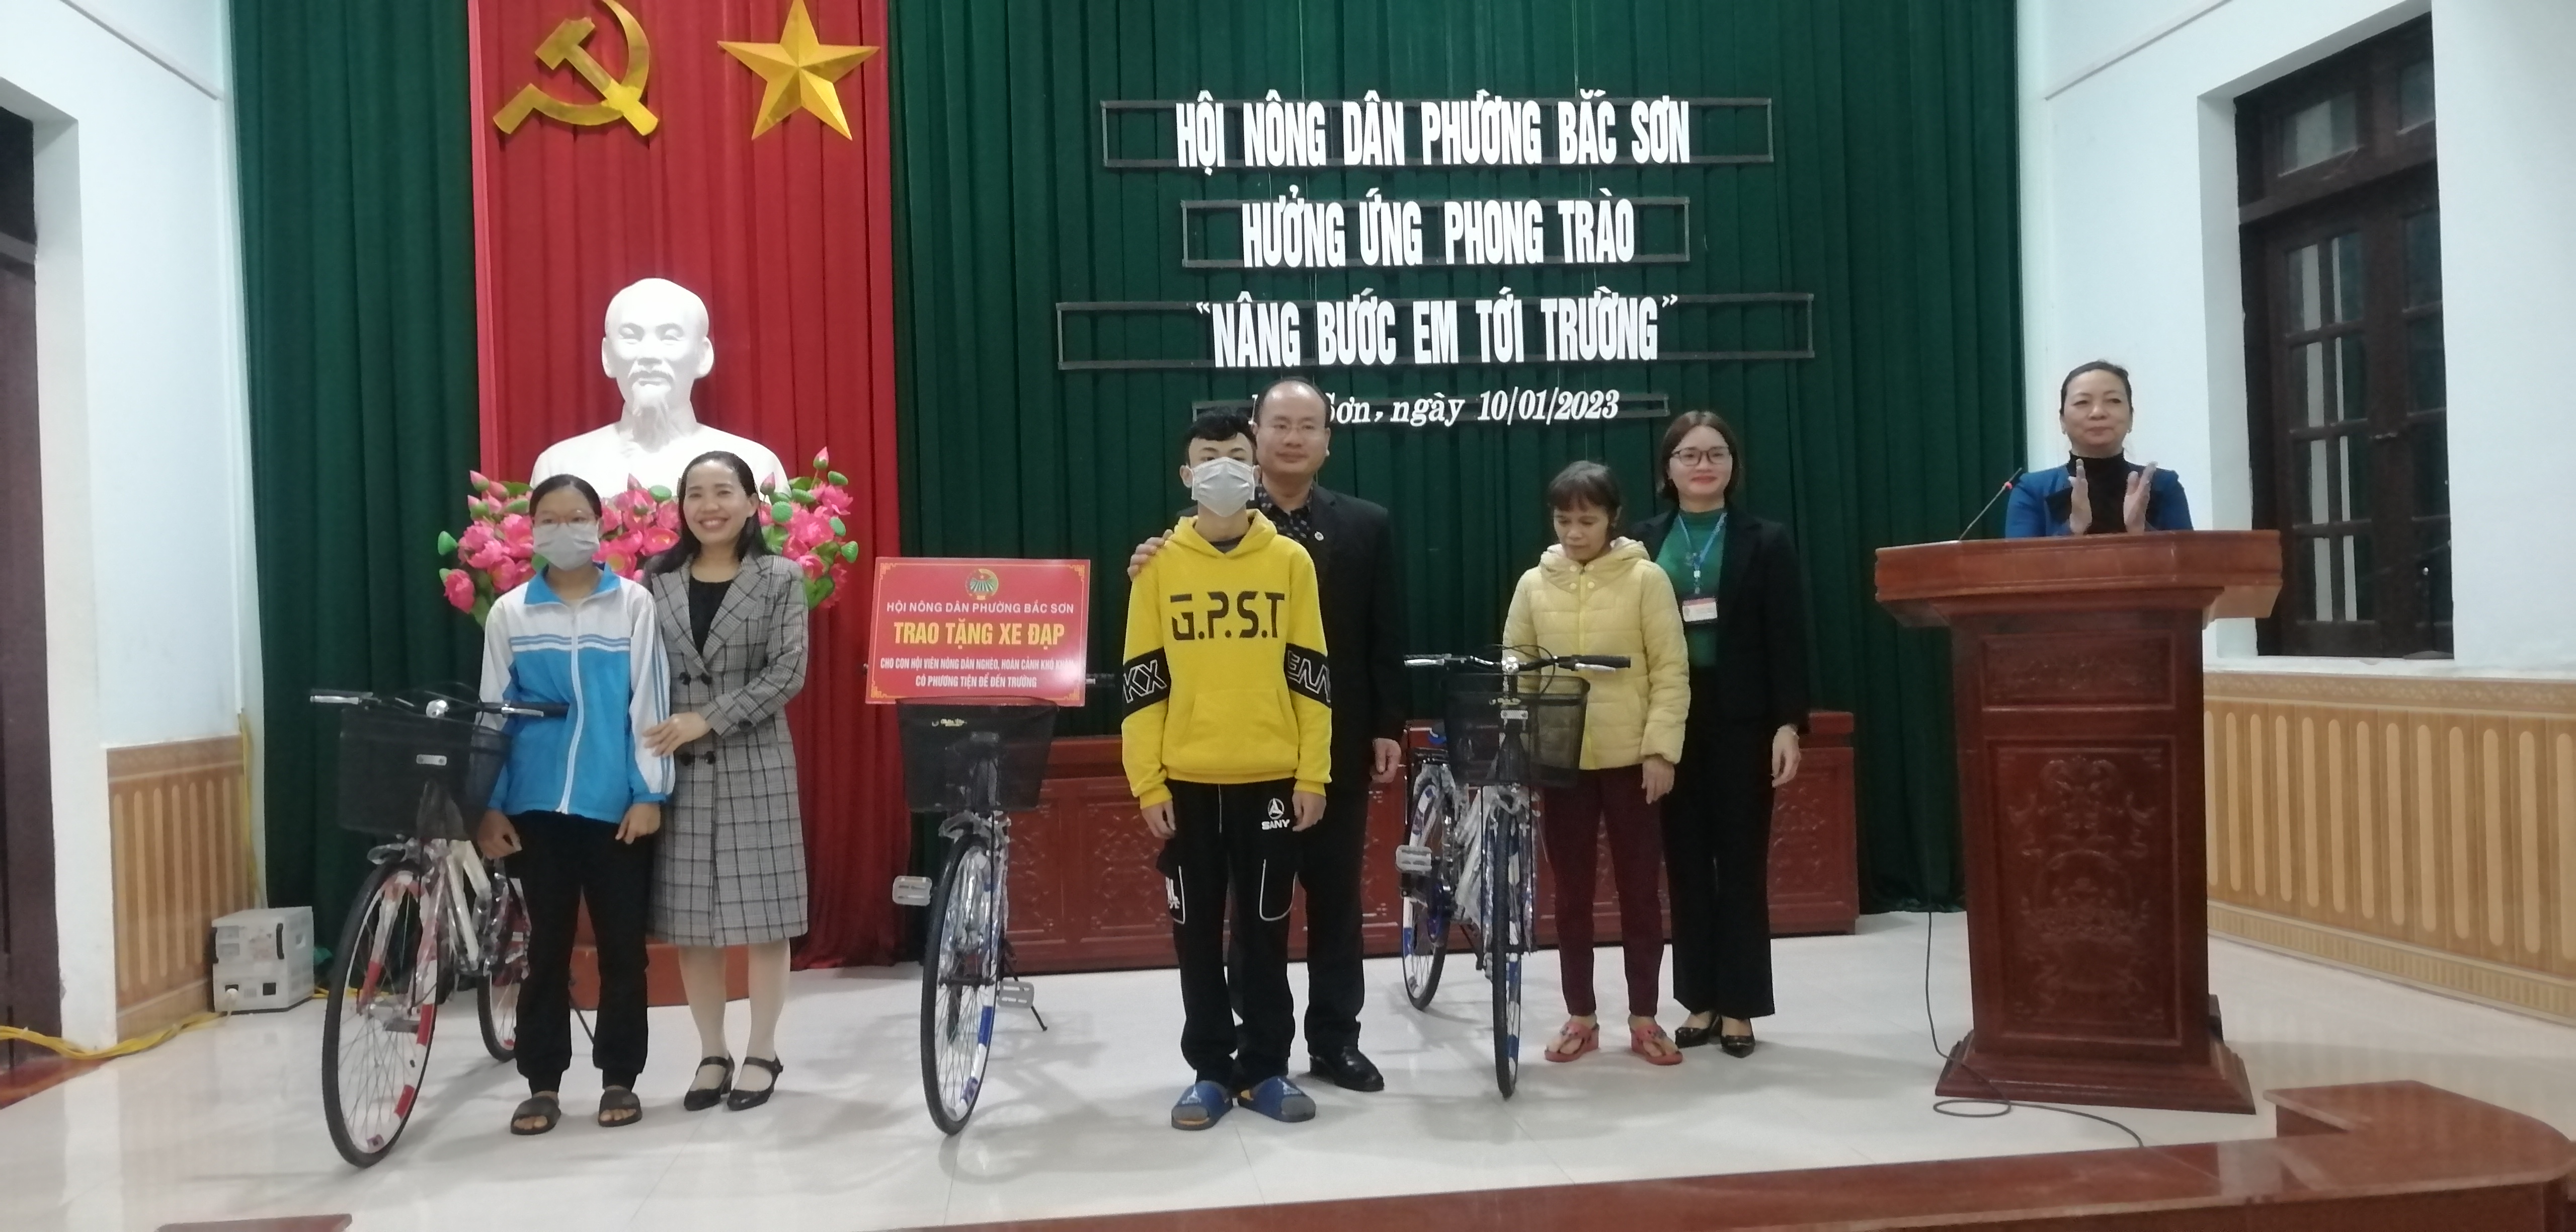 Hội Nông dân phường tổ chức chương trình tặng xe đạp “nâng bước em tới trường” cho các em học sinh nghèo, có hoàn cảnh khó khăn.